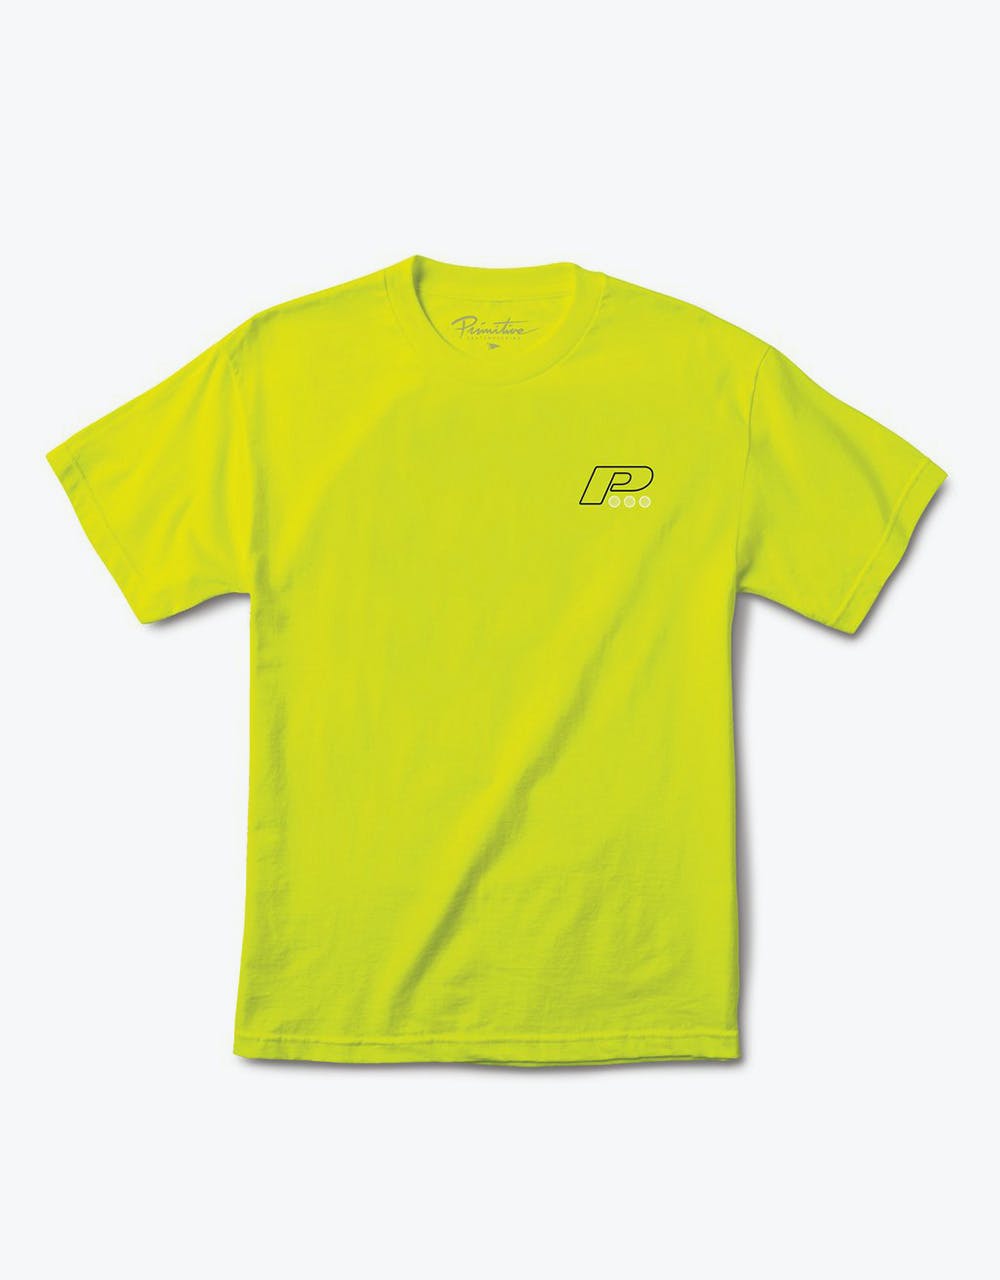 Primitive Summit T-Shirt - Saftey Green